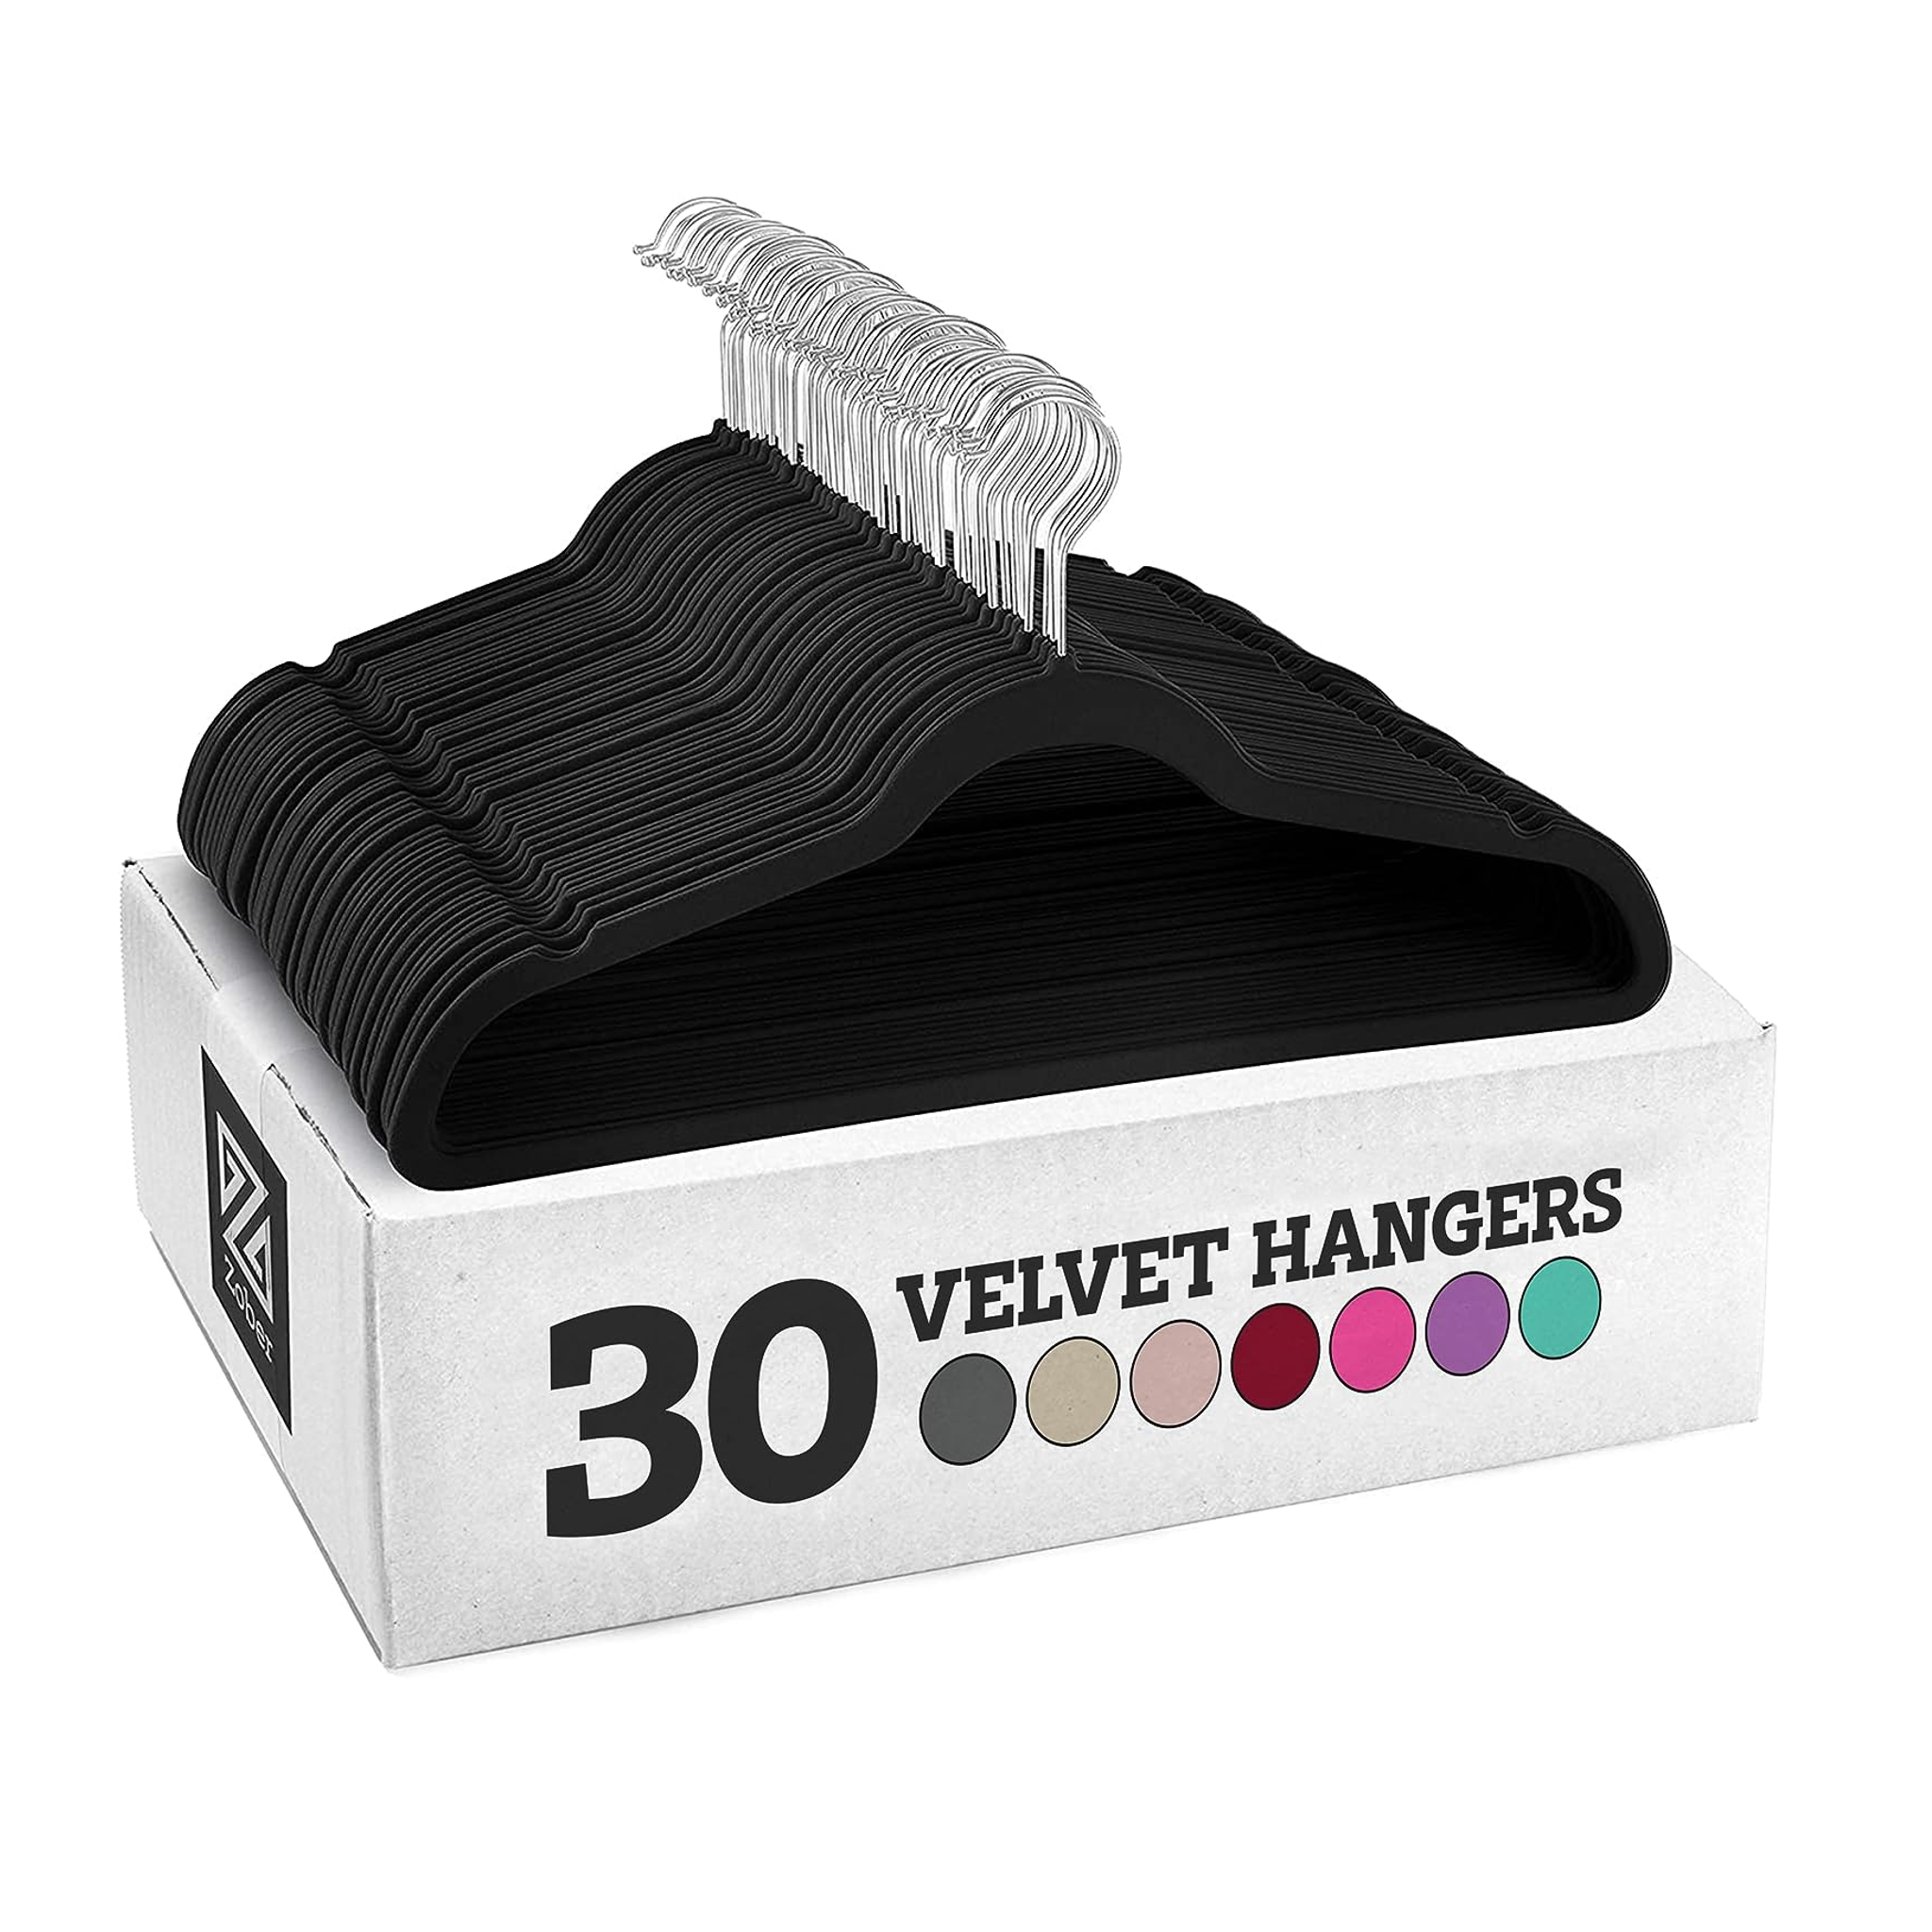 30 Heavy Duty Velvet Hangers